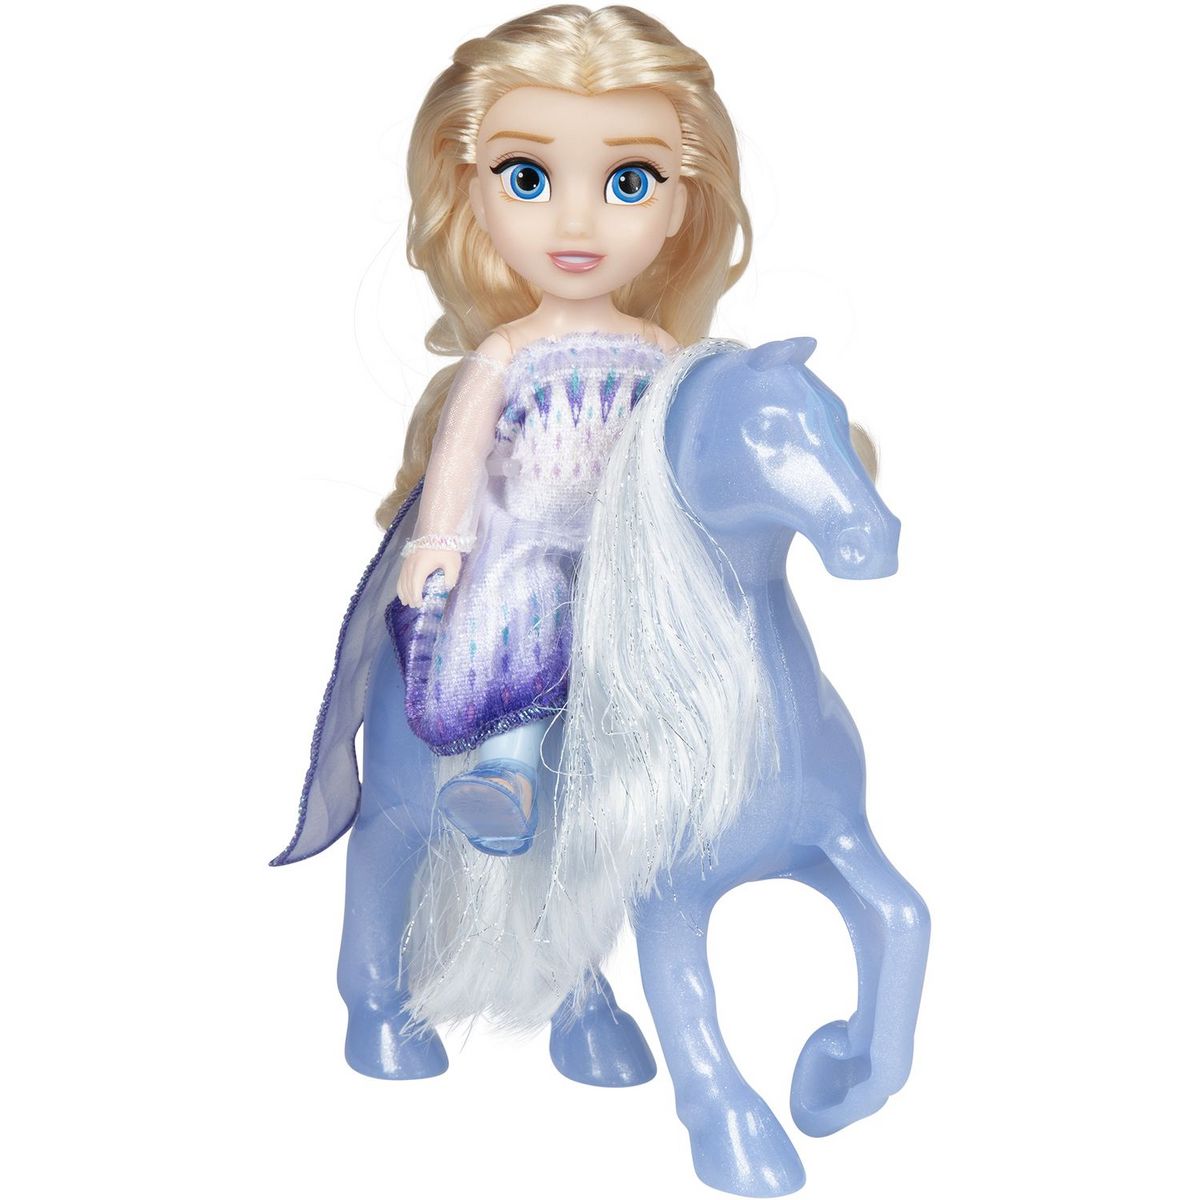 La Reine des Neiges 2 - Elsa contre le Nokk